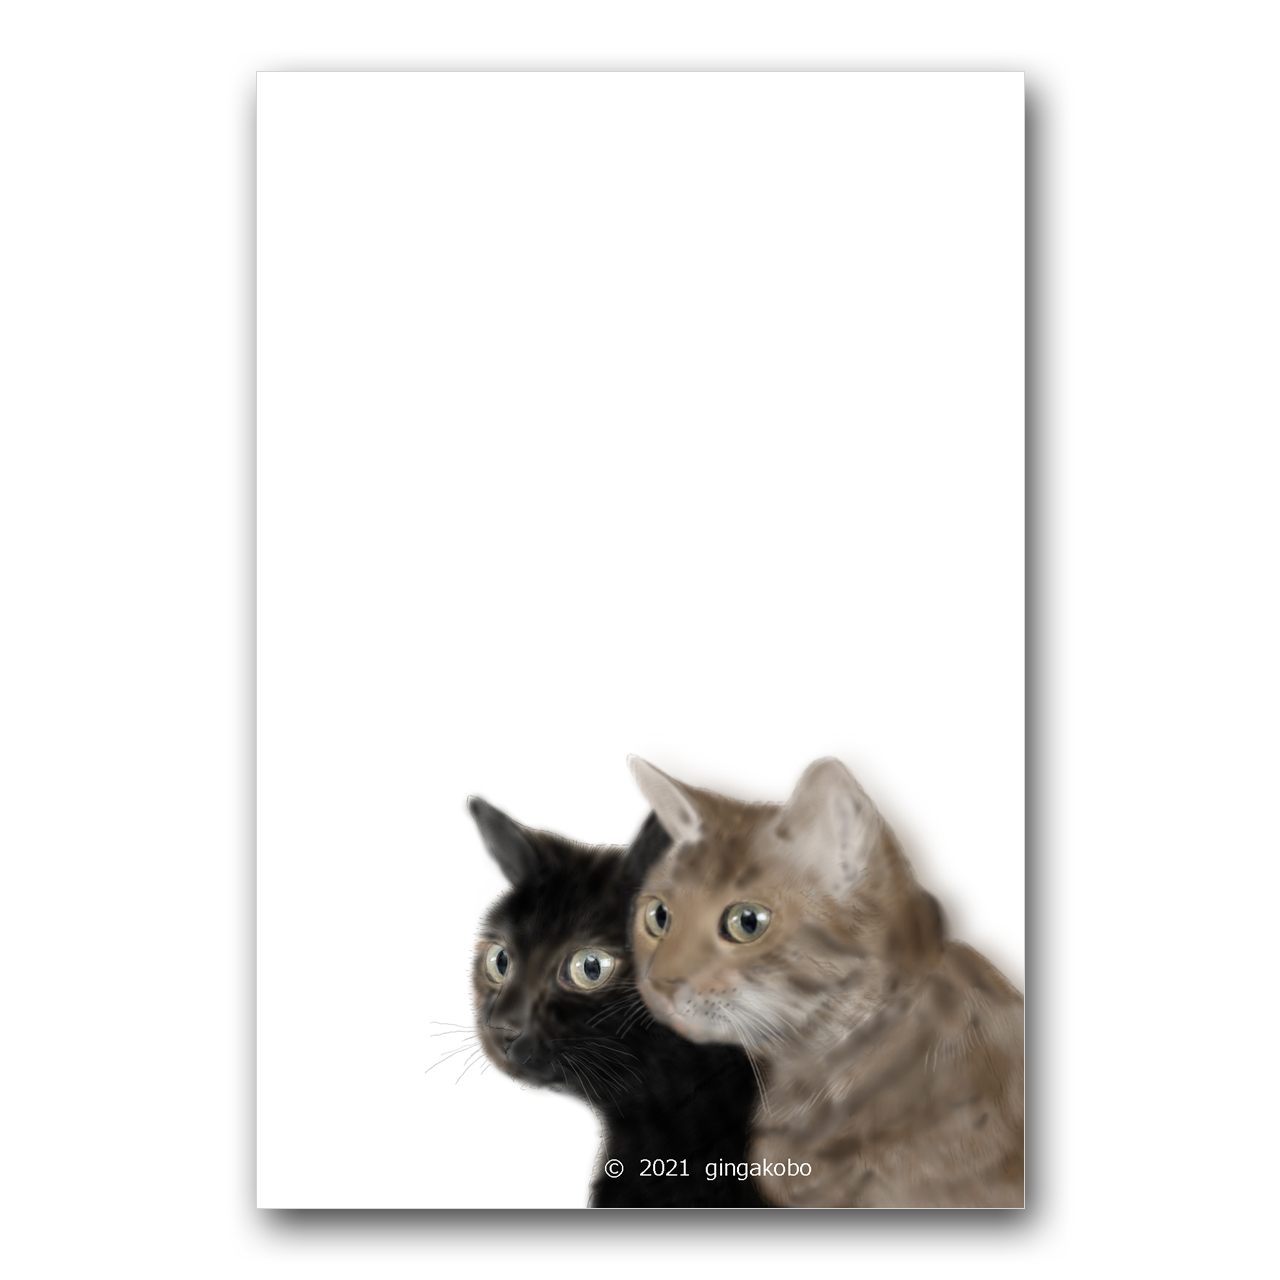 嗚呼 キミよ ワタシと並ぶキミよ 猫 ほっこり癒しのイラストポストカード2枚組no 1429 Iichi ハンドメイド クラフト作品 手仕事品の通販